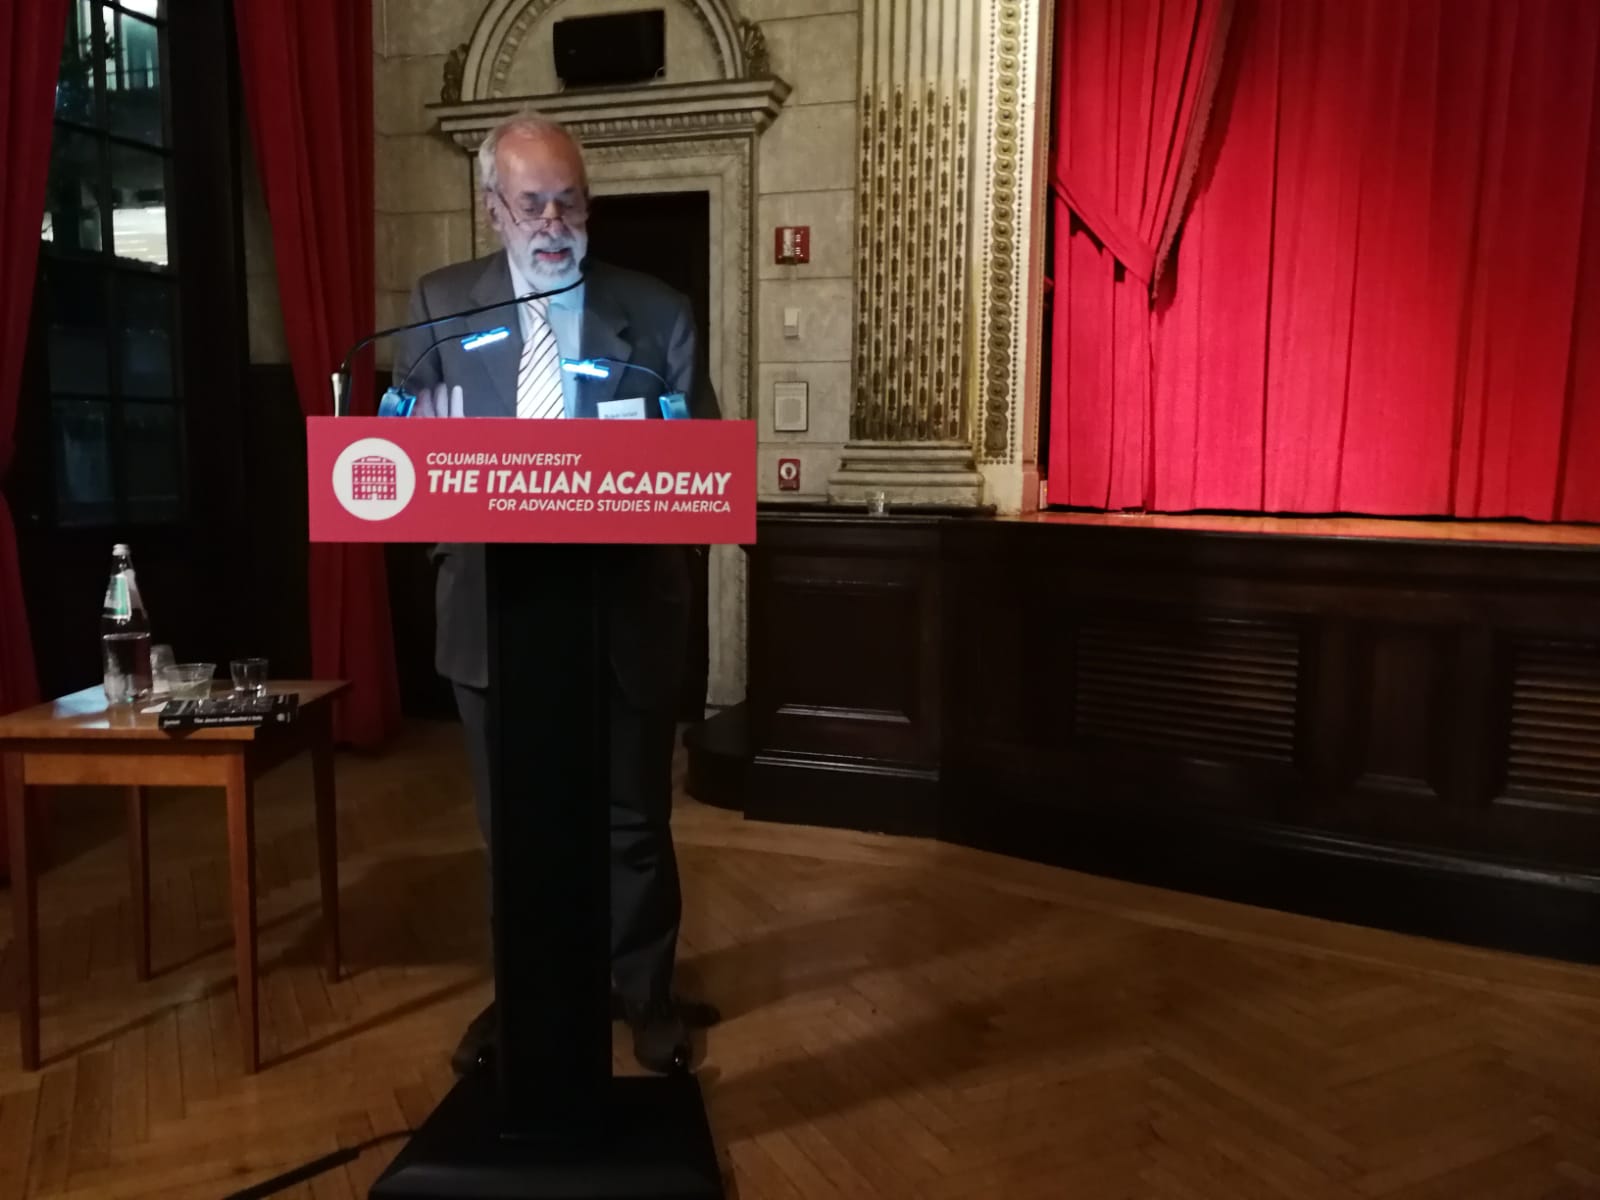 Michele Sarfatti giving a lecture